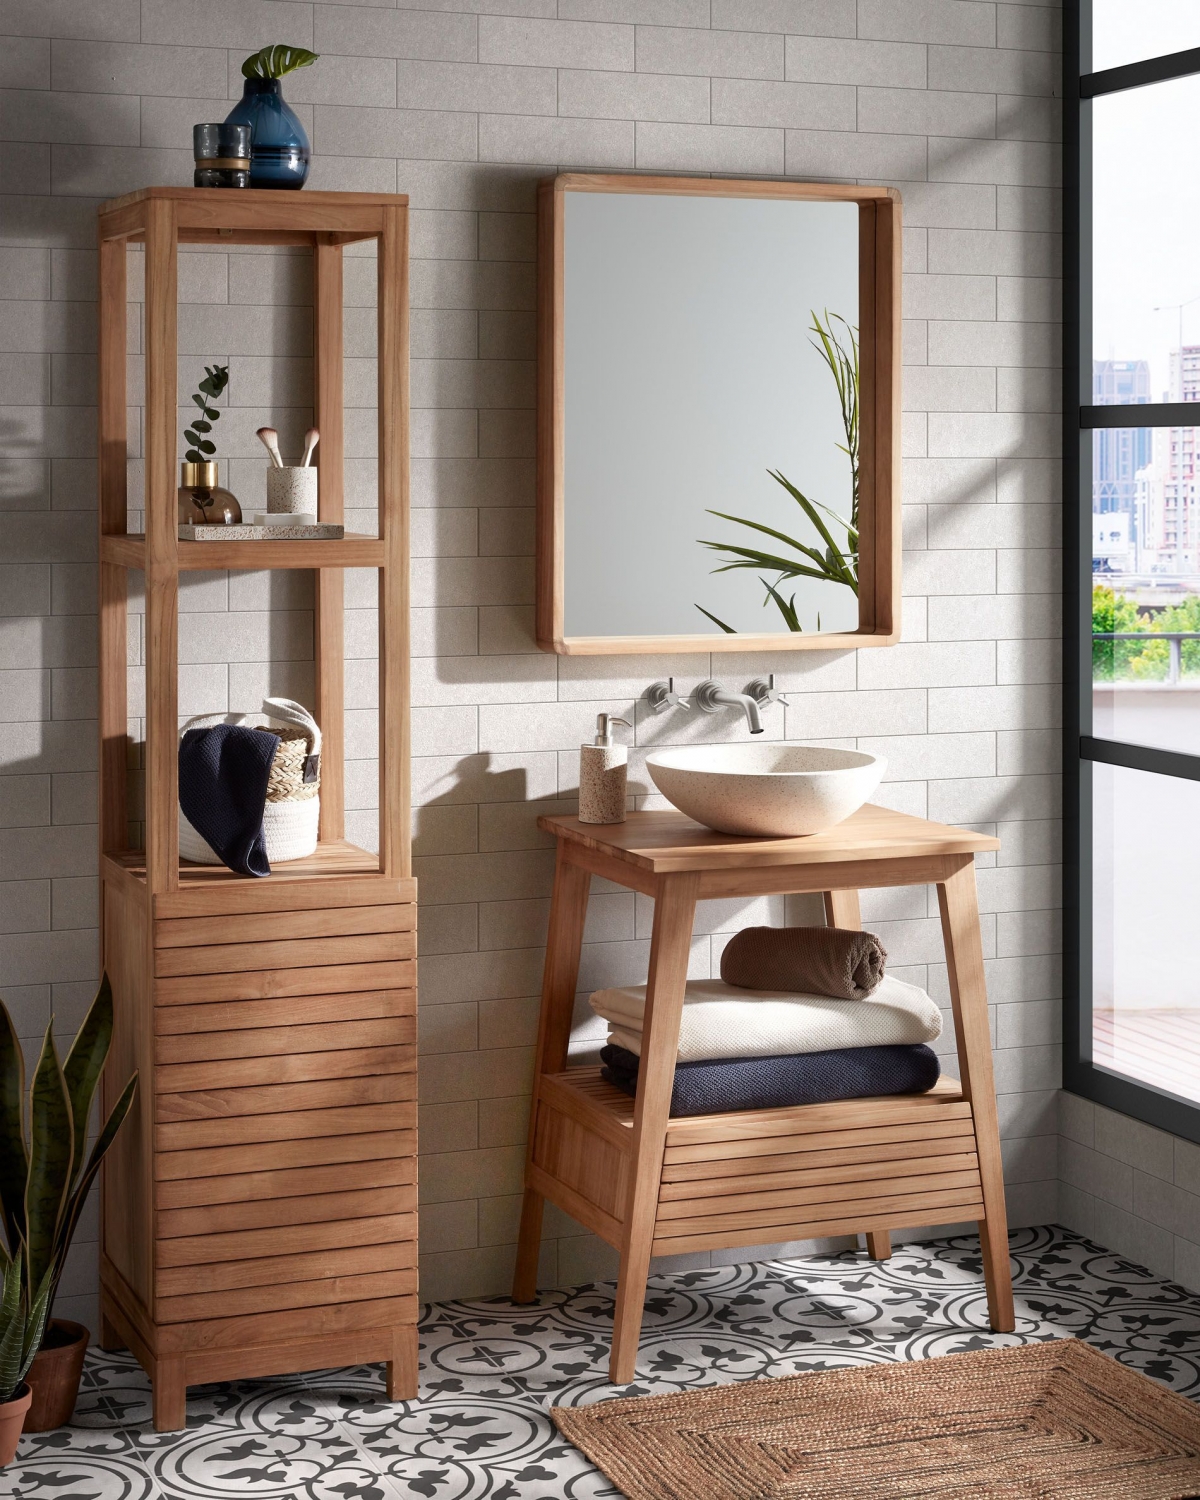 Интерьер зоны умывальника в ванной комнате: презентабельность, практичность, простота.